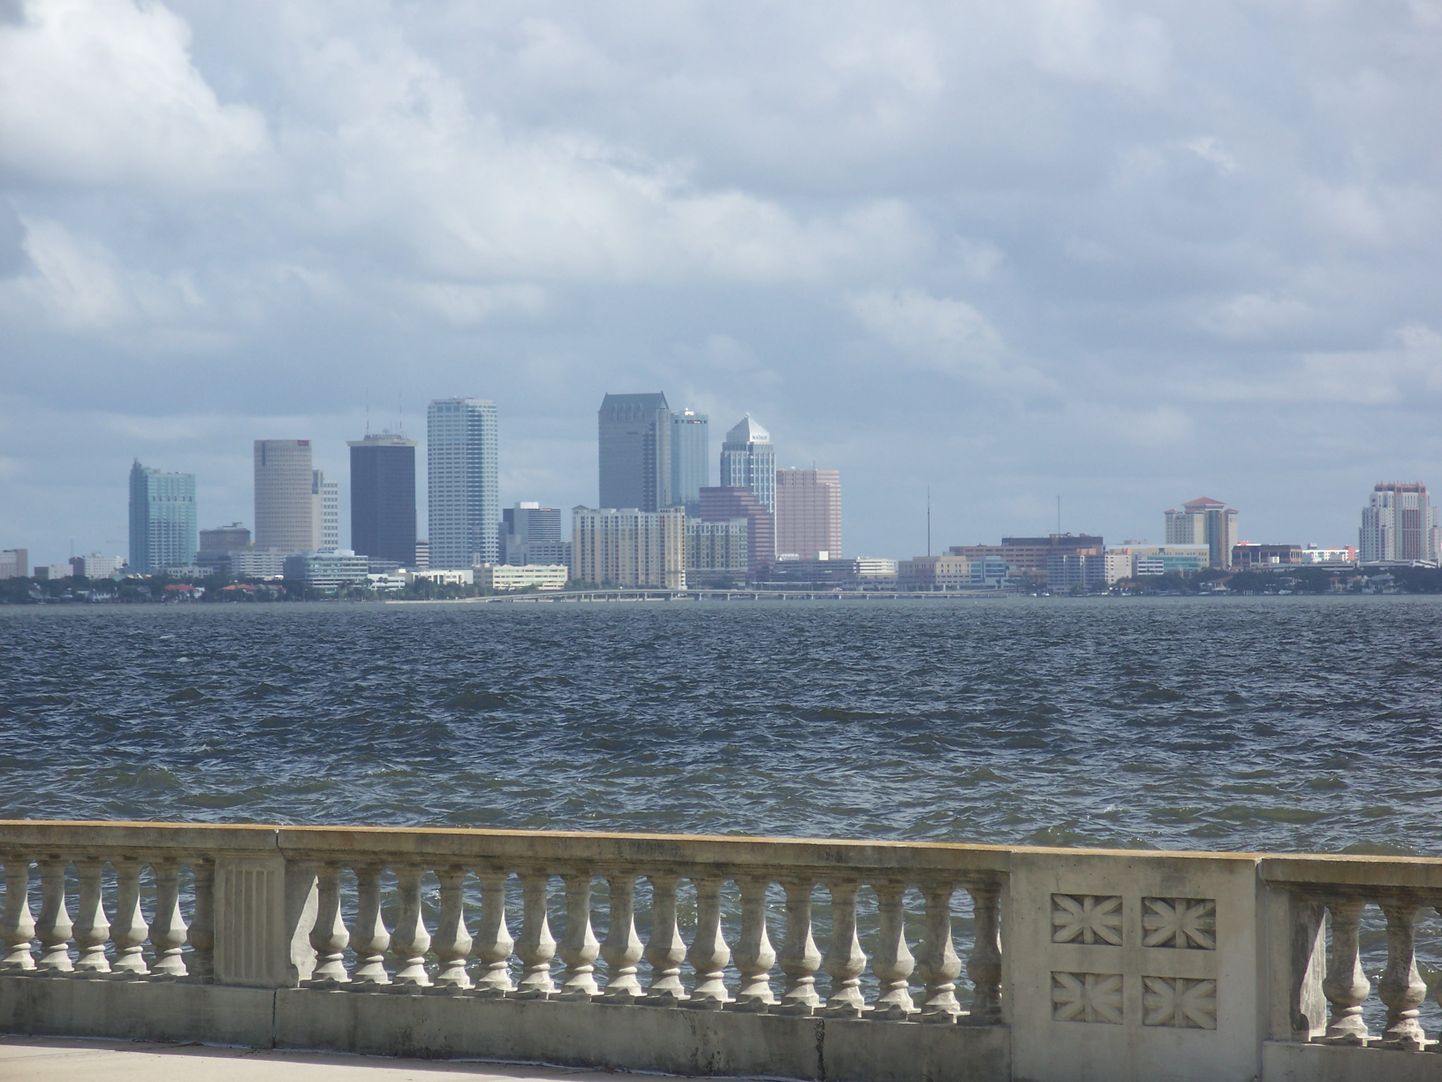 Tampa on üks Mehhiko lähe äärsetest kuurortlinnadest ja tuntud oma sigaritööstuse, loomaaia ja valgete randade poolest.